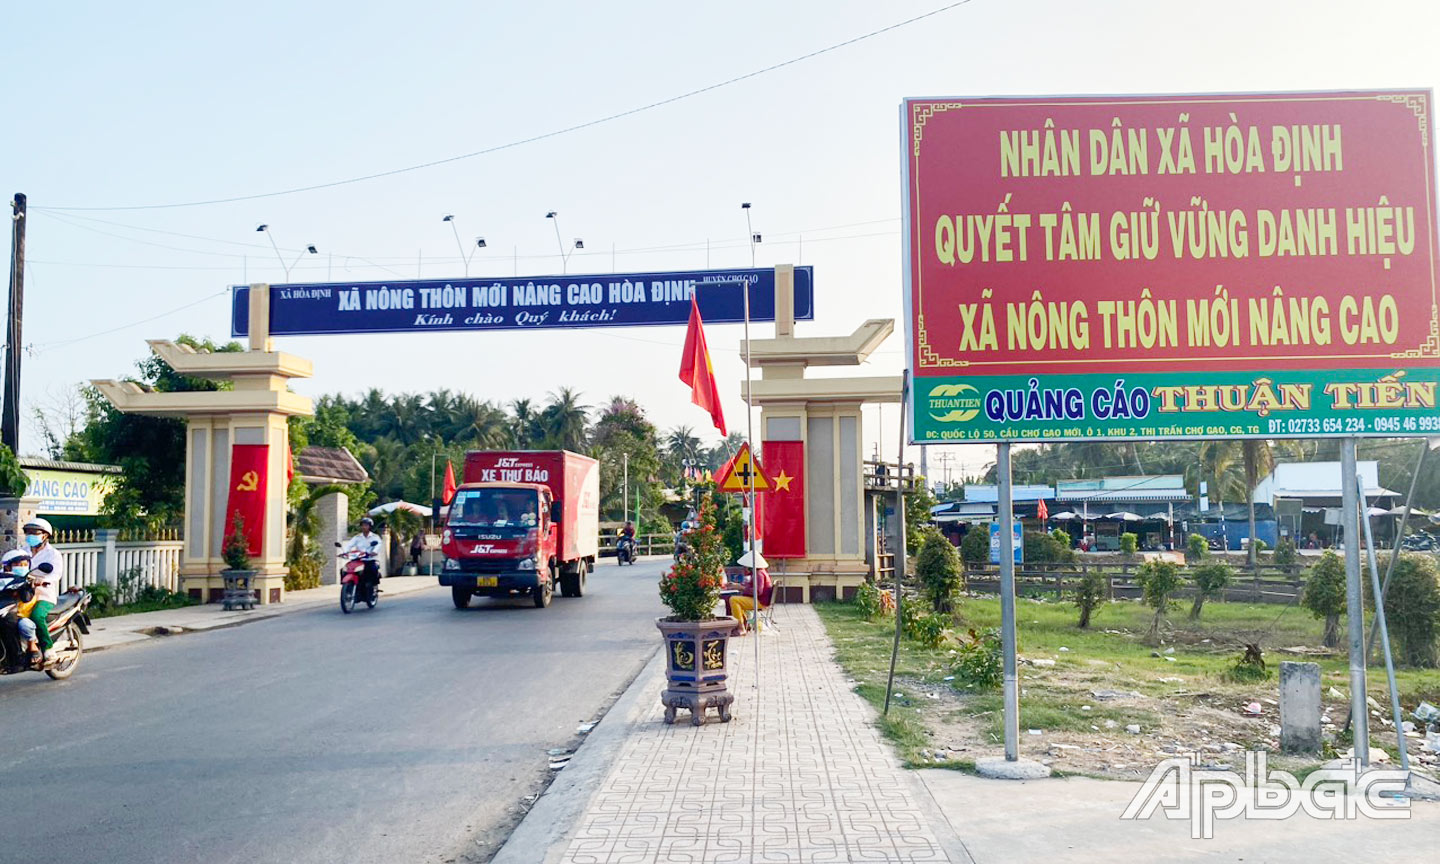 Tuyến đường trung tâm của xã Hòa Định được đầu tư khang trang.